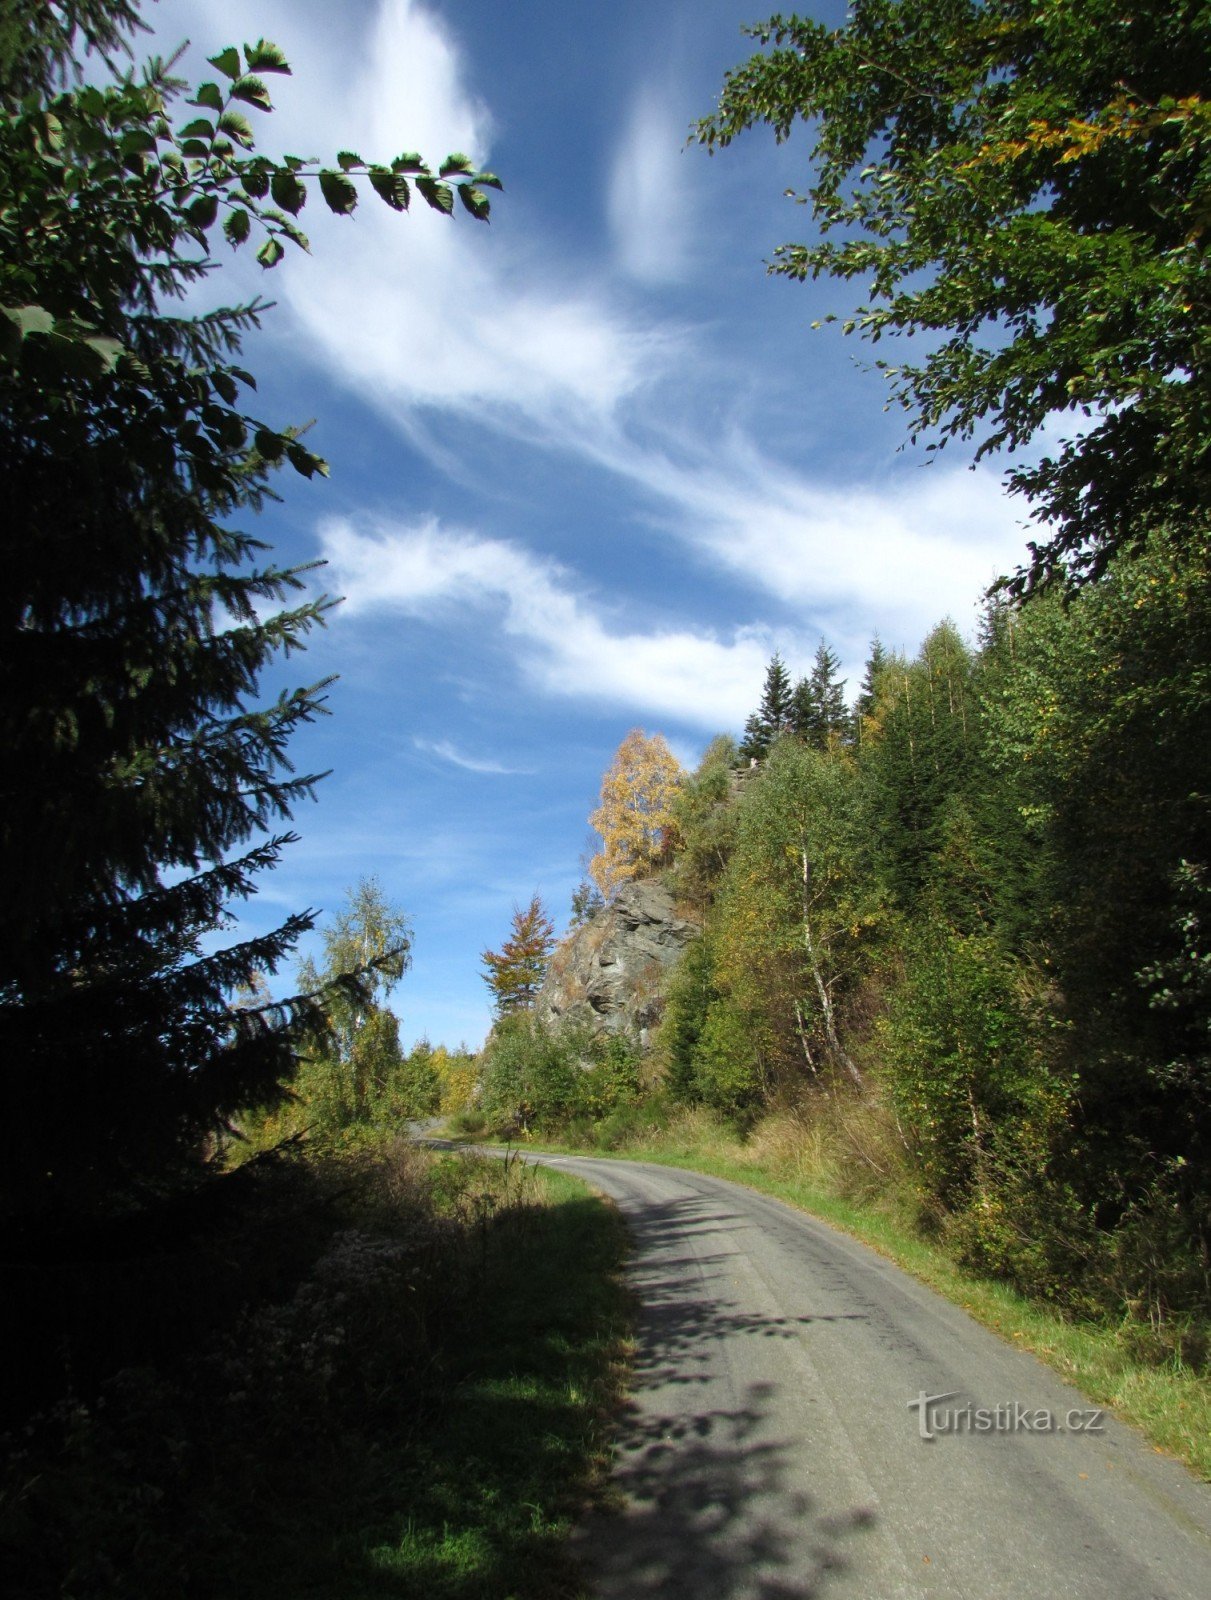 Kamzičí-rots boven de vallei van Bílé potok - Jeseníky-gebergte